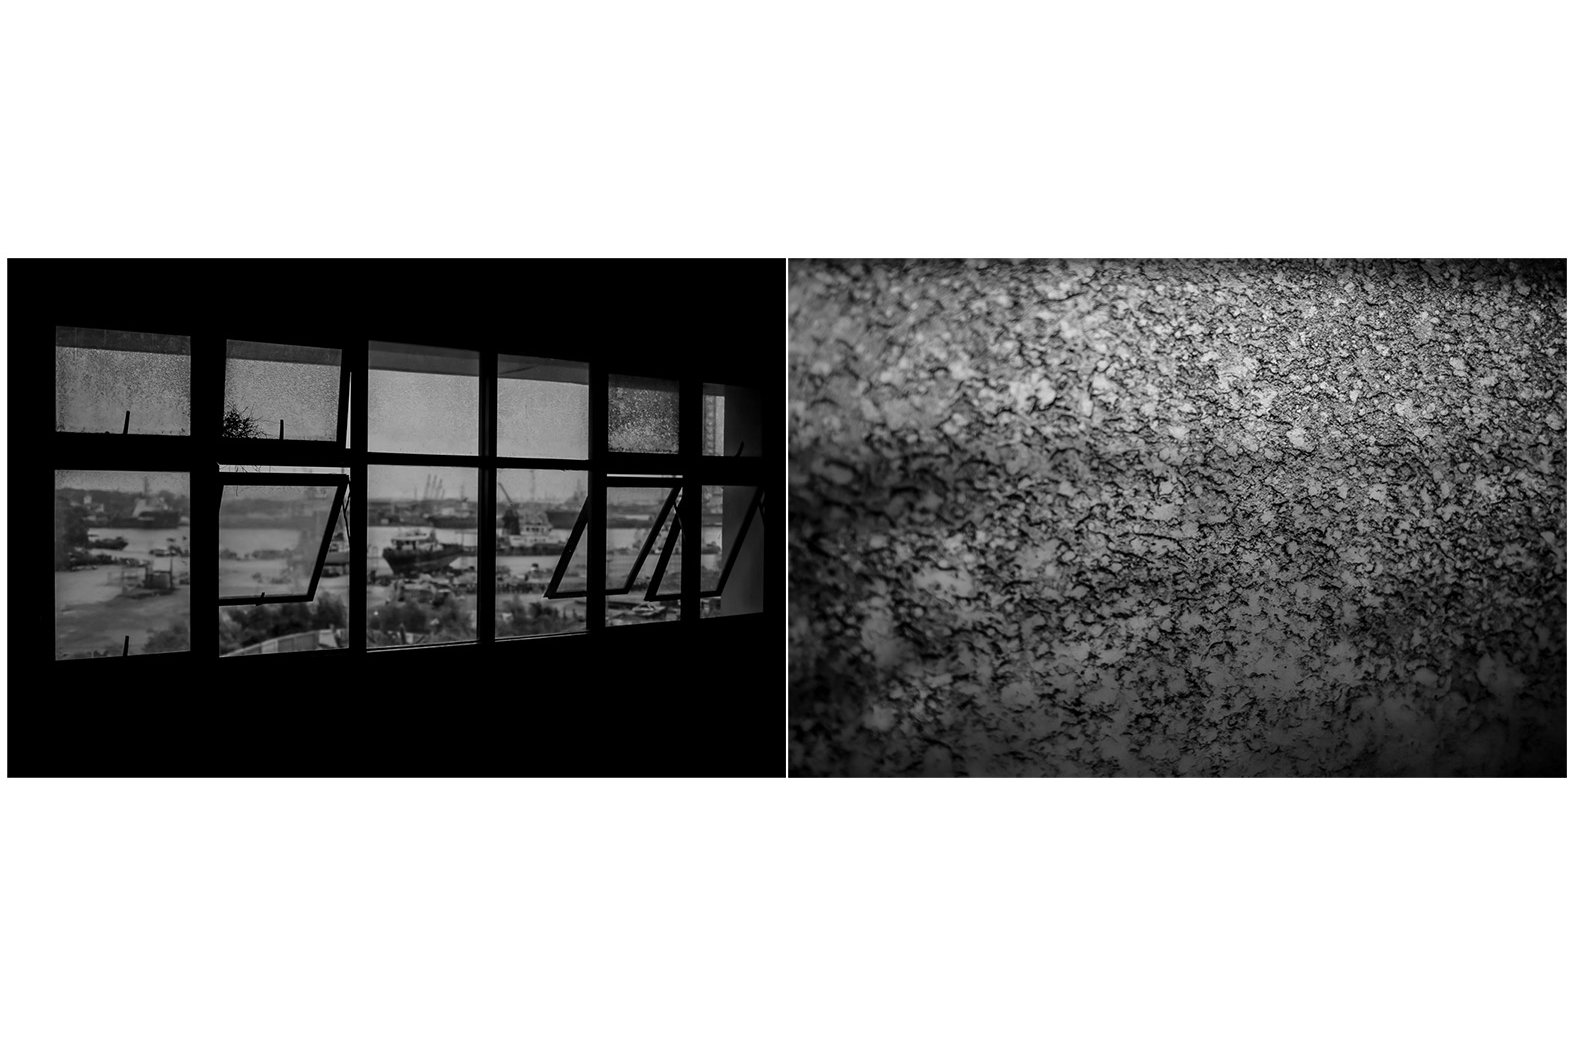 (kiri) Kapal pengangkut batubara tampak dari salah satu jendela kelas SMPN 209, Marunda, Cilincing, Jakarta. (kanan) Endapan debu batubara menempel di salah satu jendela kelas SMPN 209, Marunda, Cilincing, Jakarta.